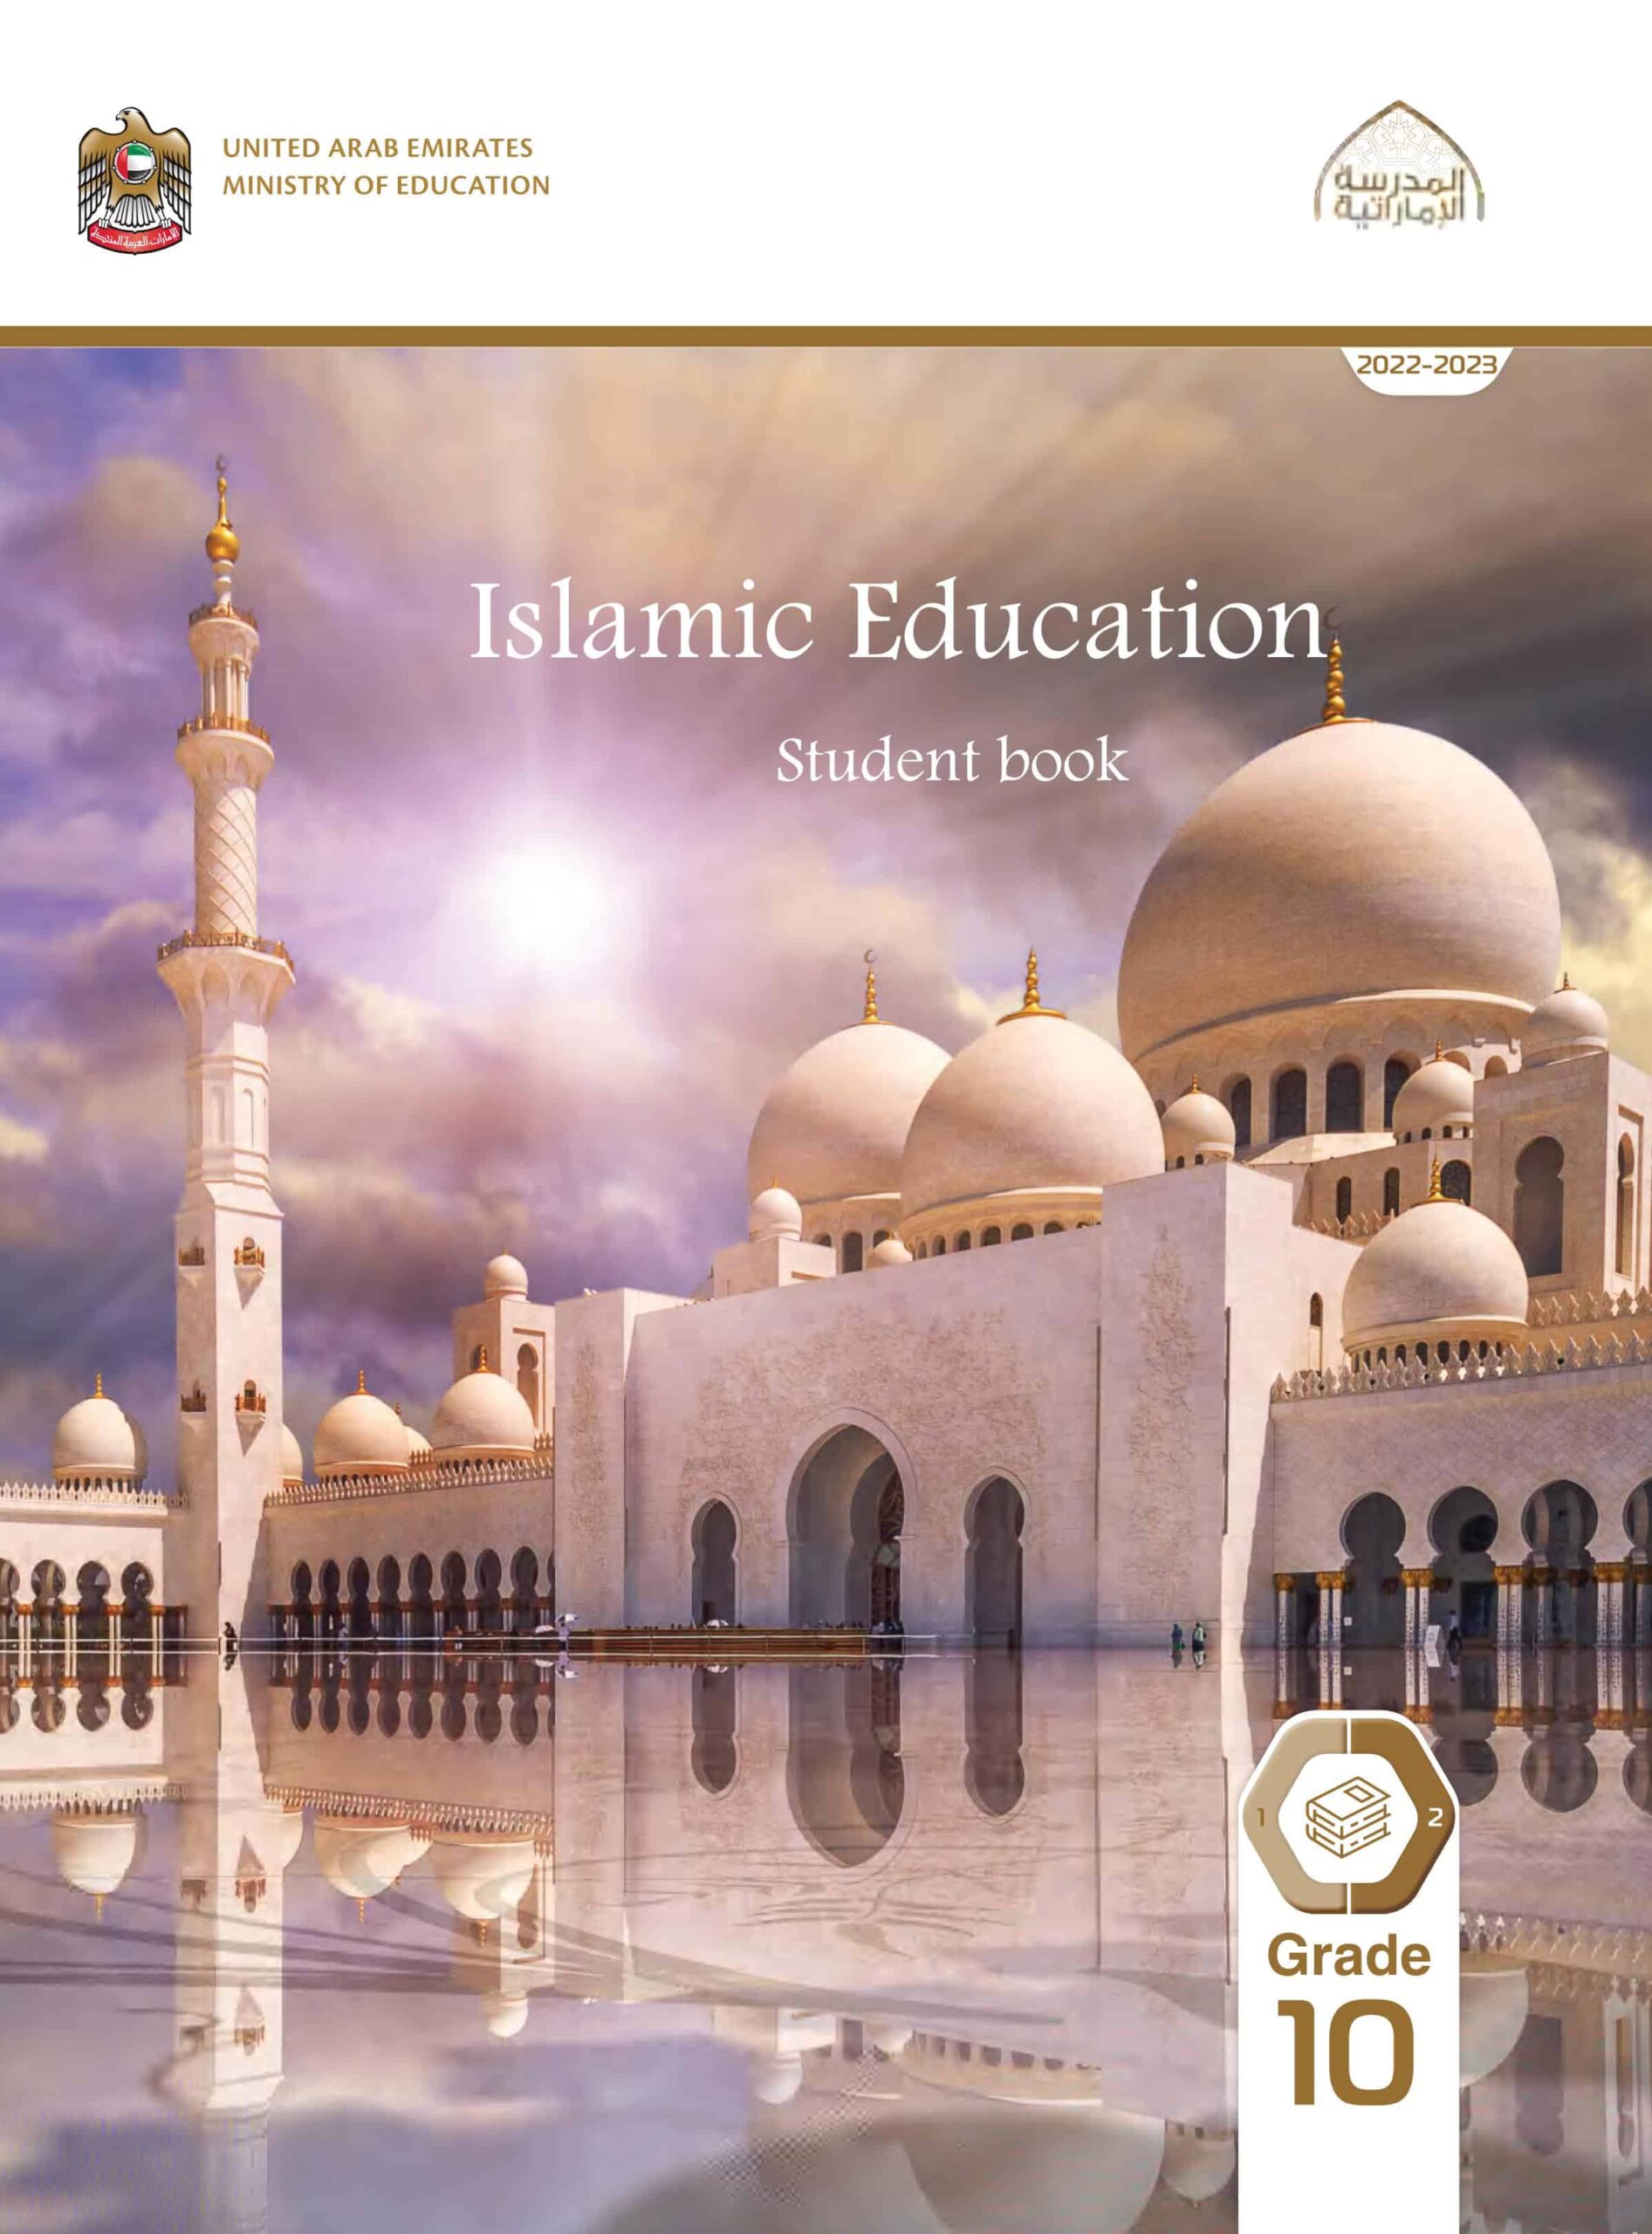 كتاب الطالب لغير الناطقين باللغة العربية التربية الإسلامية الصف العاشر الفصل الدراسي الثاني 2022-2023